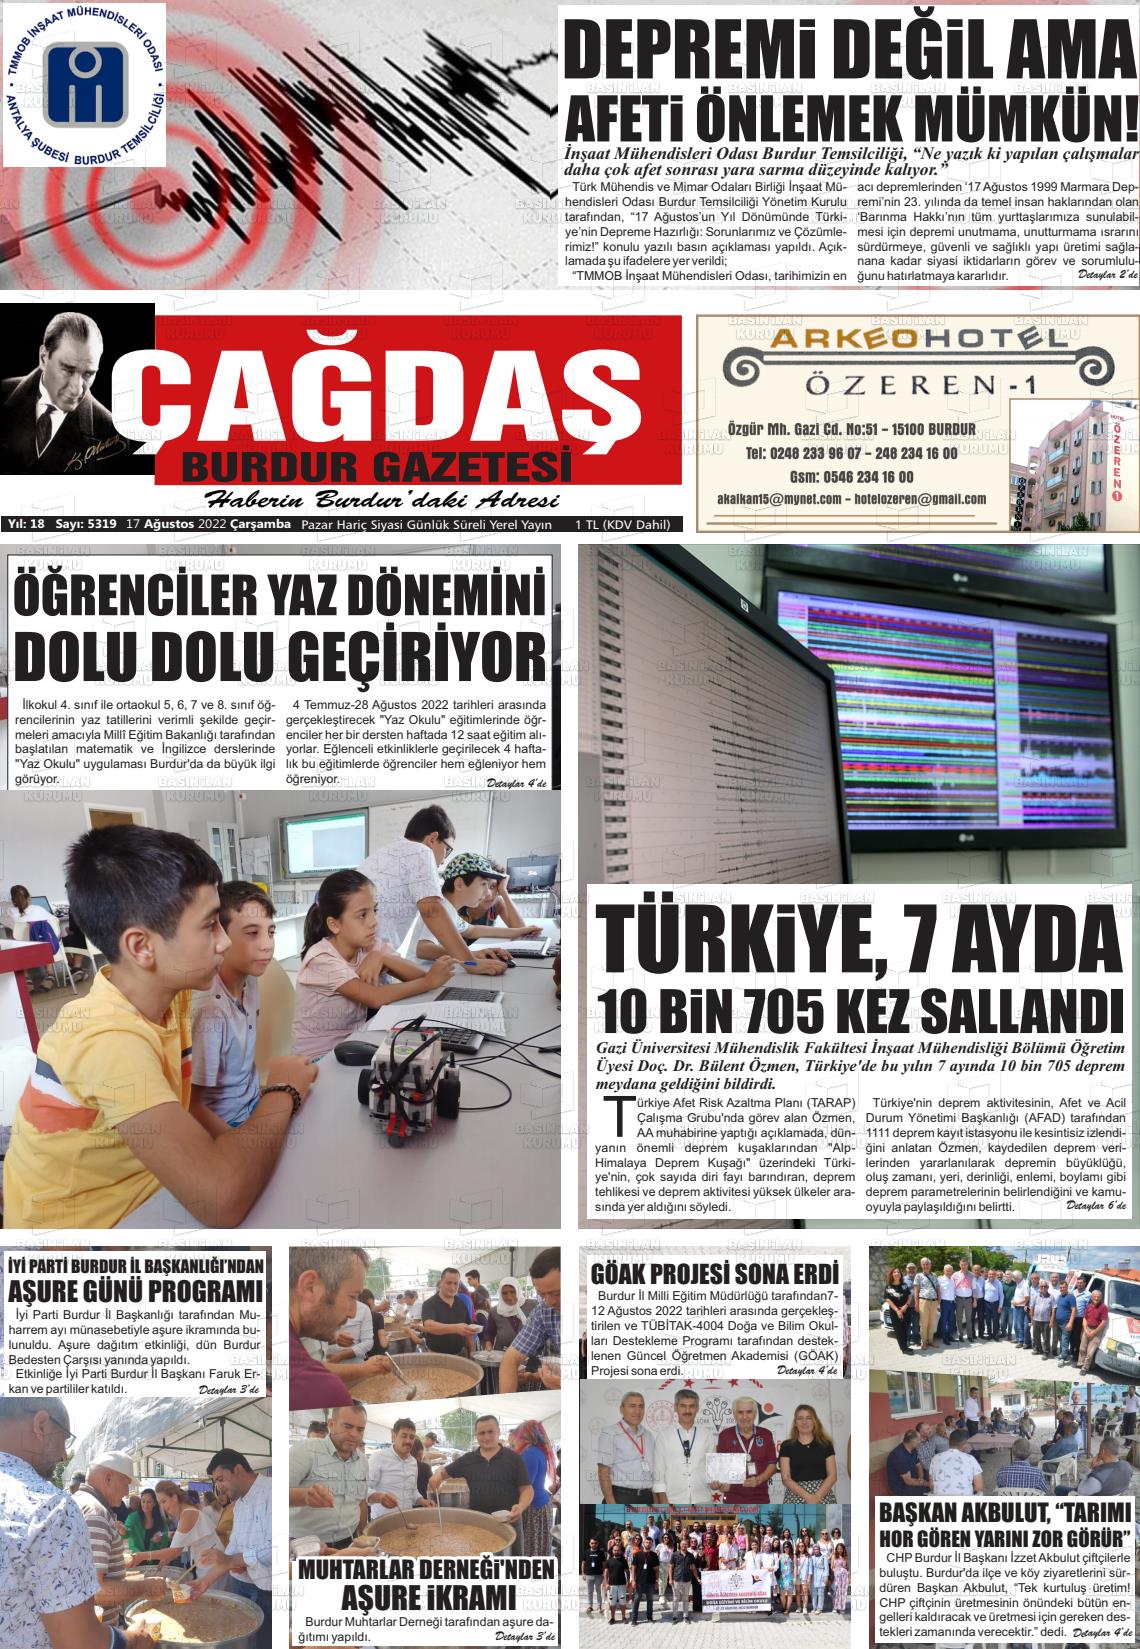 17 Ağustos 2022 Çağdaş Burdur Gazete Manşeti